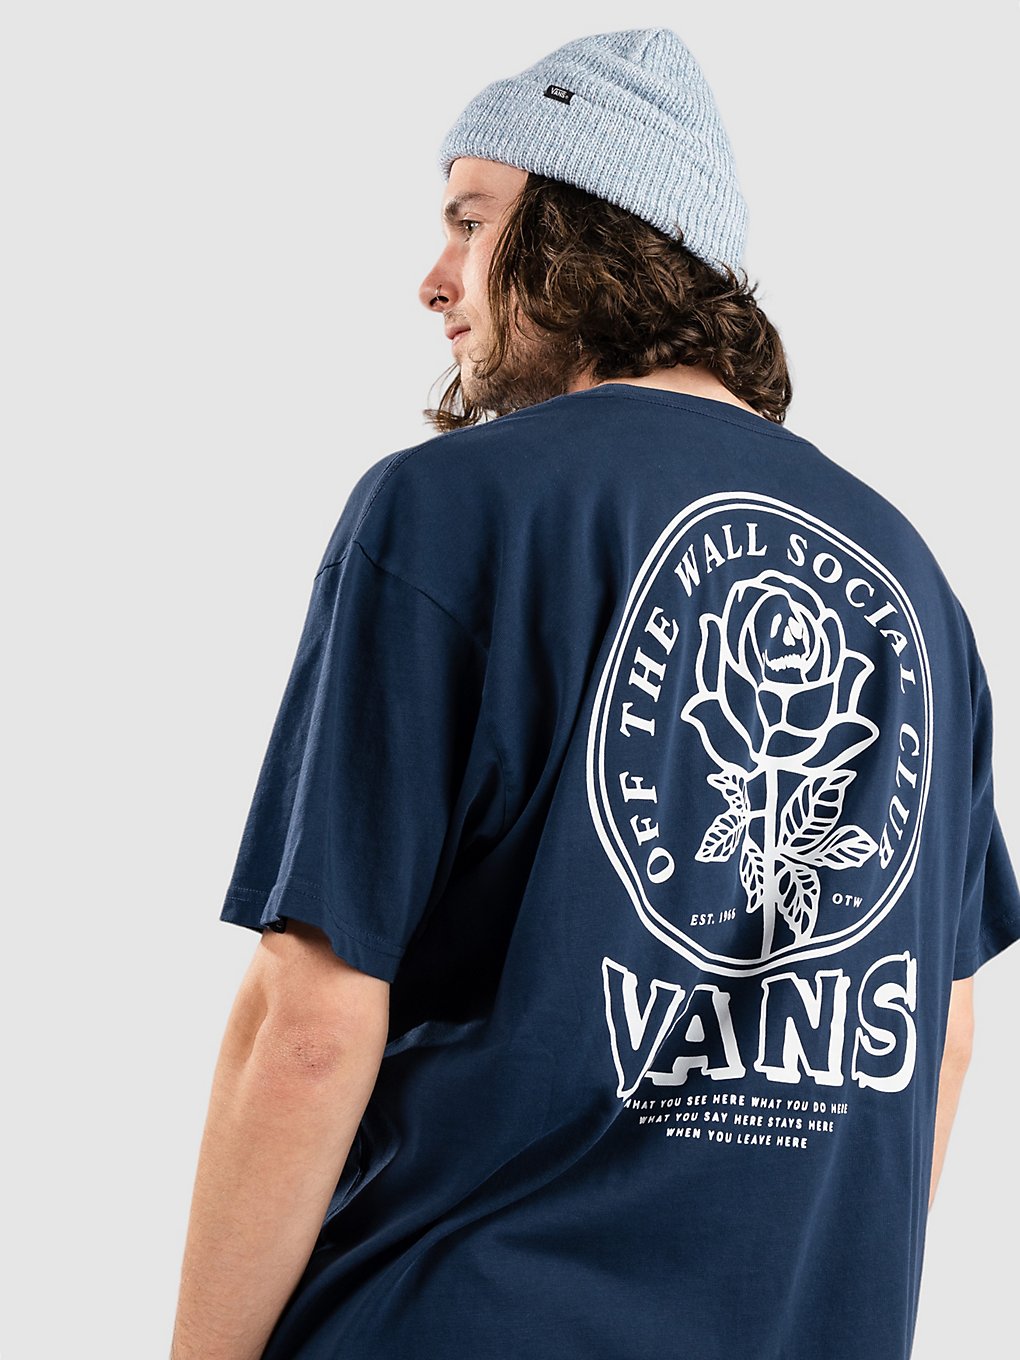 Vans Off The Wall Social Clu T-Shirt dress blues kaufen